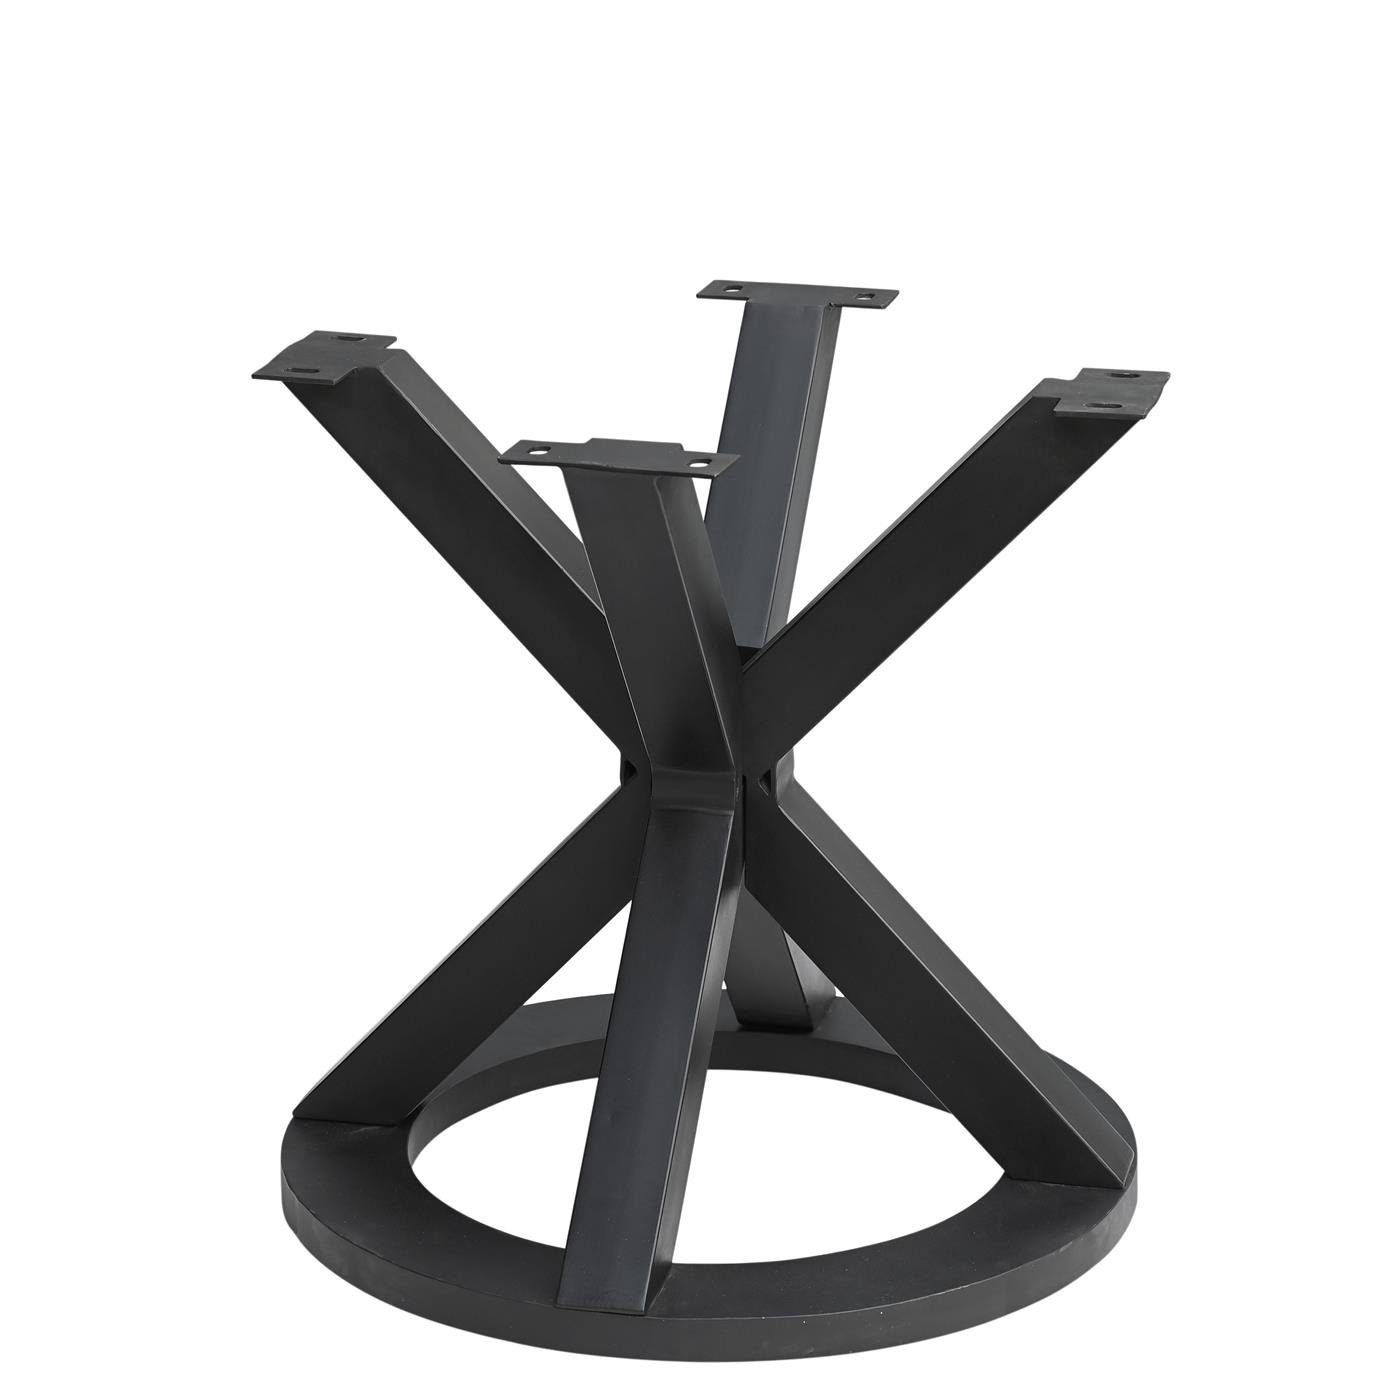 baario Esstisch Tischgestell MERID Eisen schwarz Tischfuß Tischbein geschmiedet rund, Metall Design